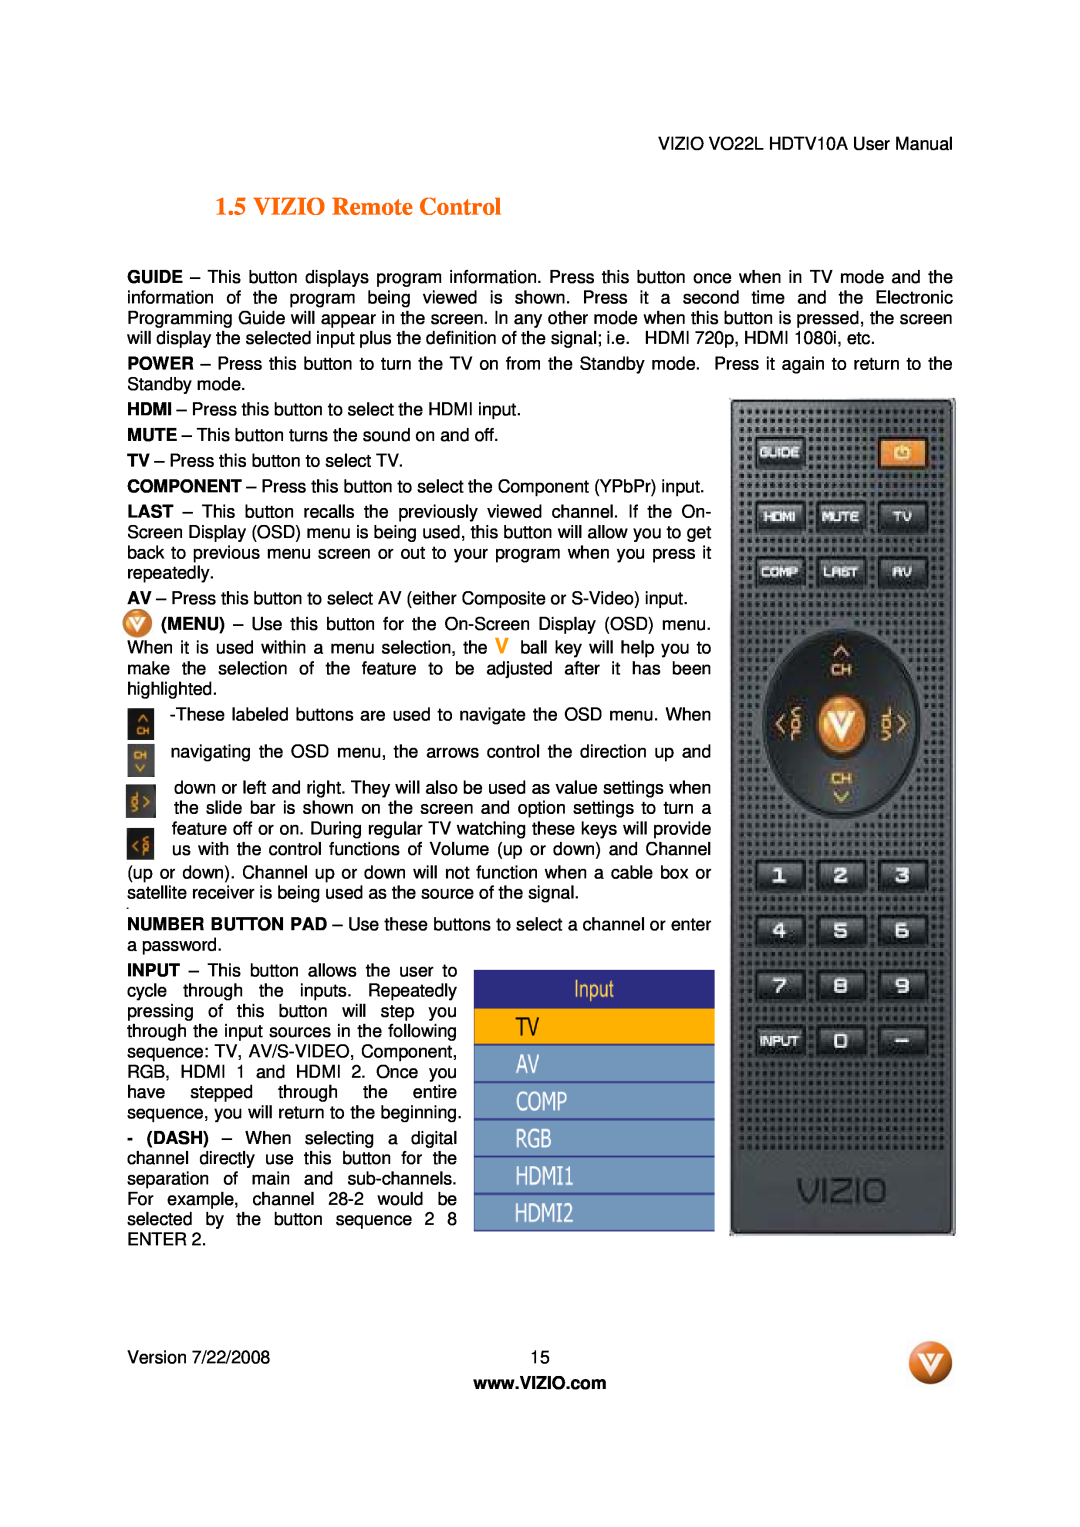 Vizio VO22L user manual VIZIO Remote Control 